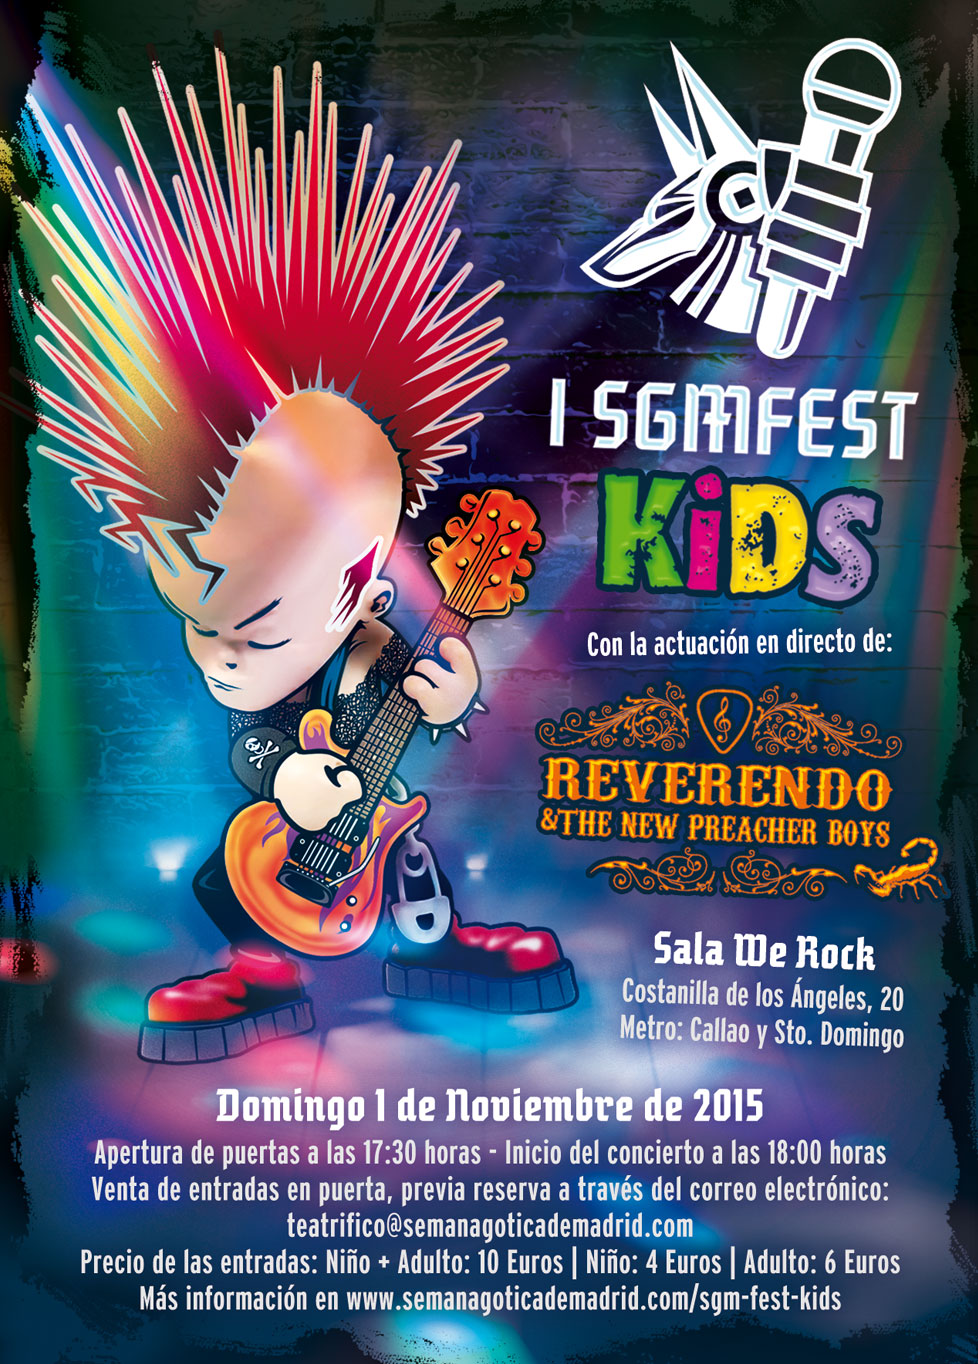 SGM FEST KIDS 2015 - I Edition of Semana Gótica de Madrid Festival For Kids